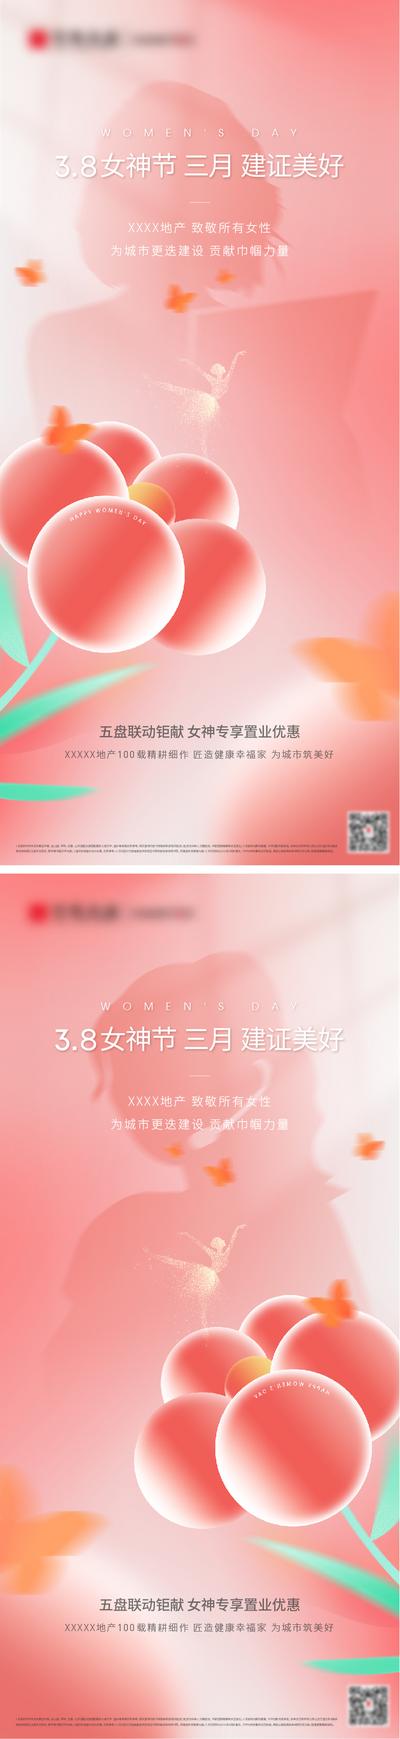 南门网 广告 海报 节日 妇女节 38 鲜花 系列 创意